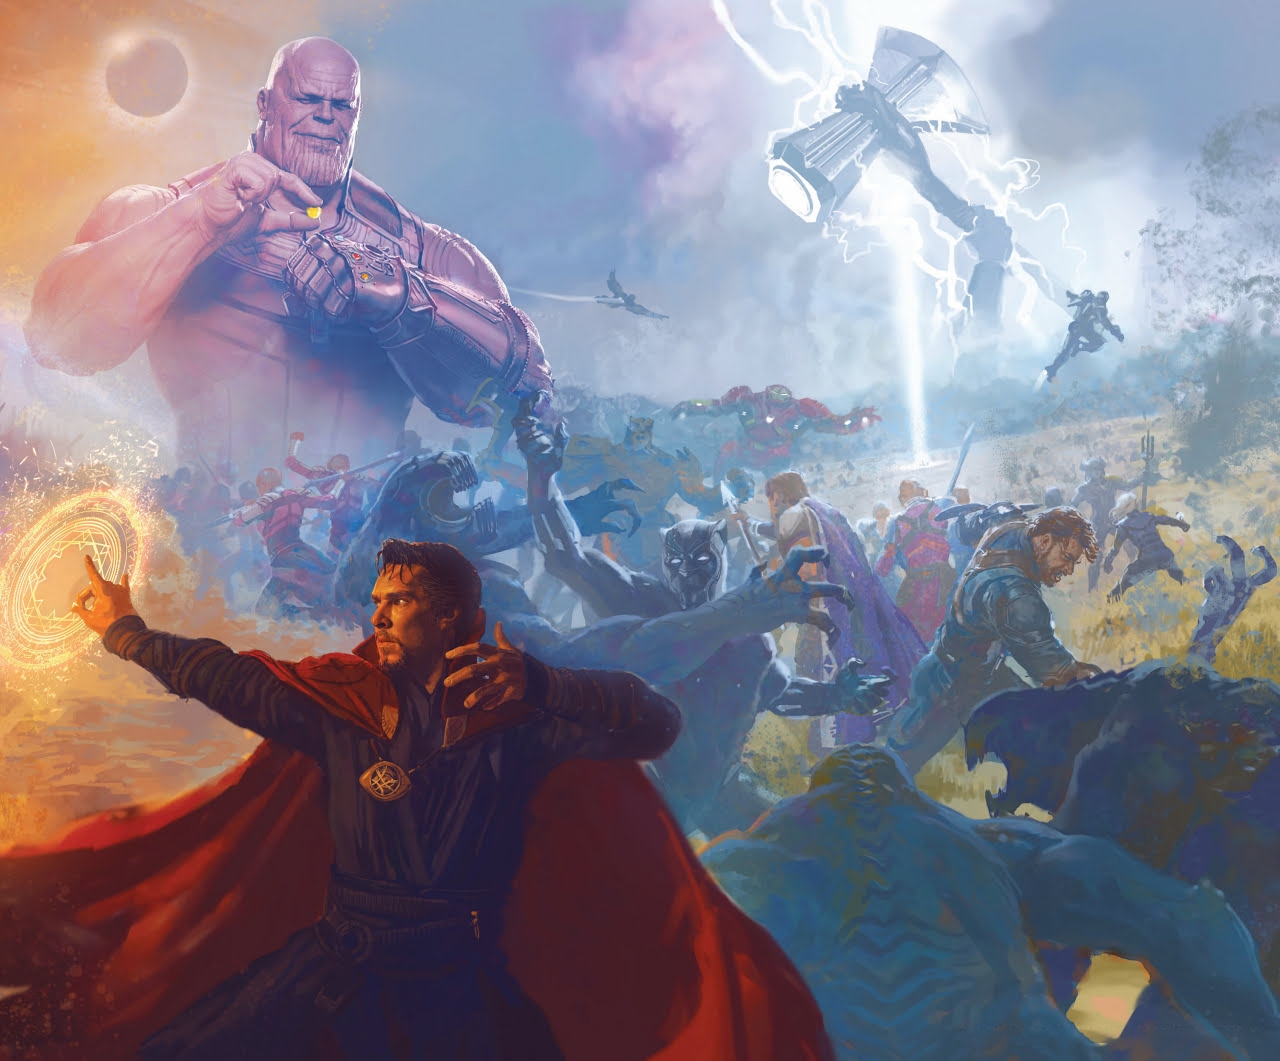 The Art of Marvel's Avengers Infinity War 3